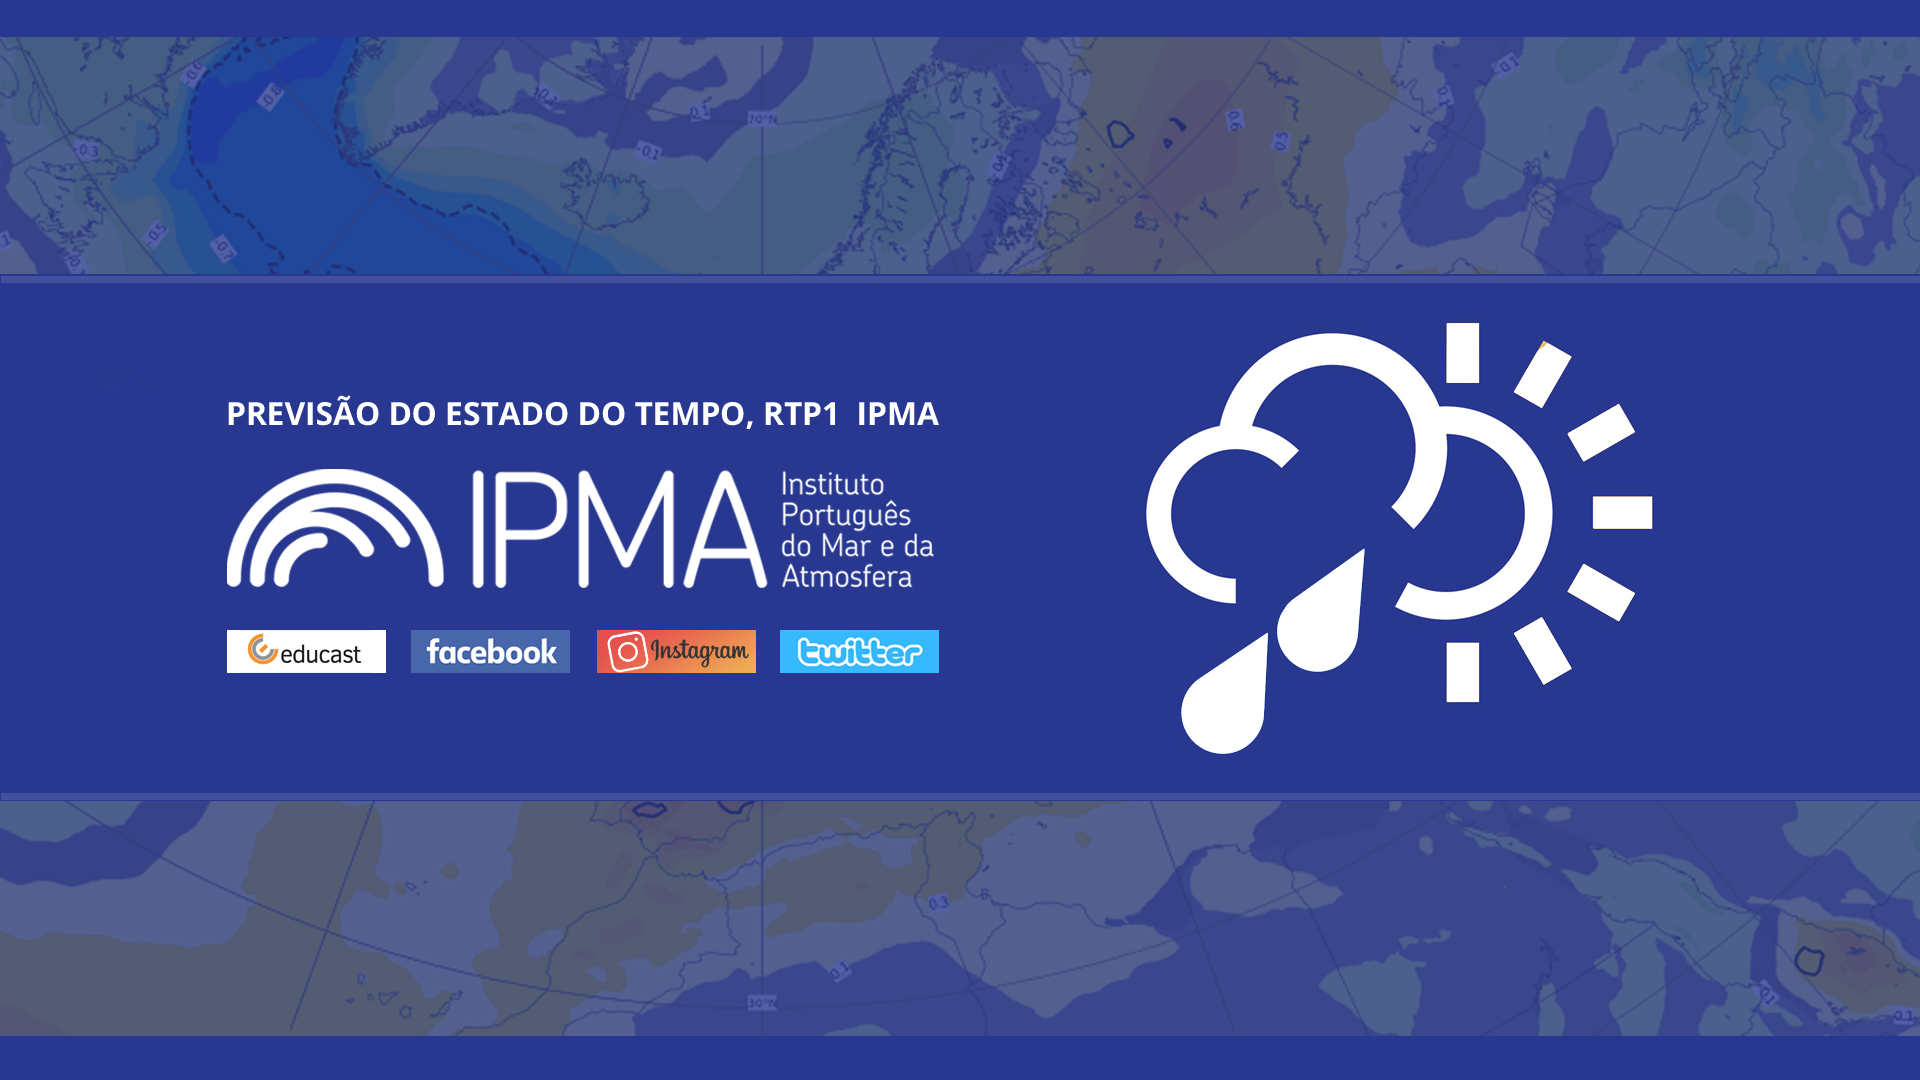  Previsão do estado do tempo, RTP1, 03-03-2022, IPMA.